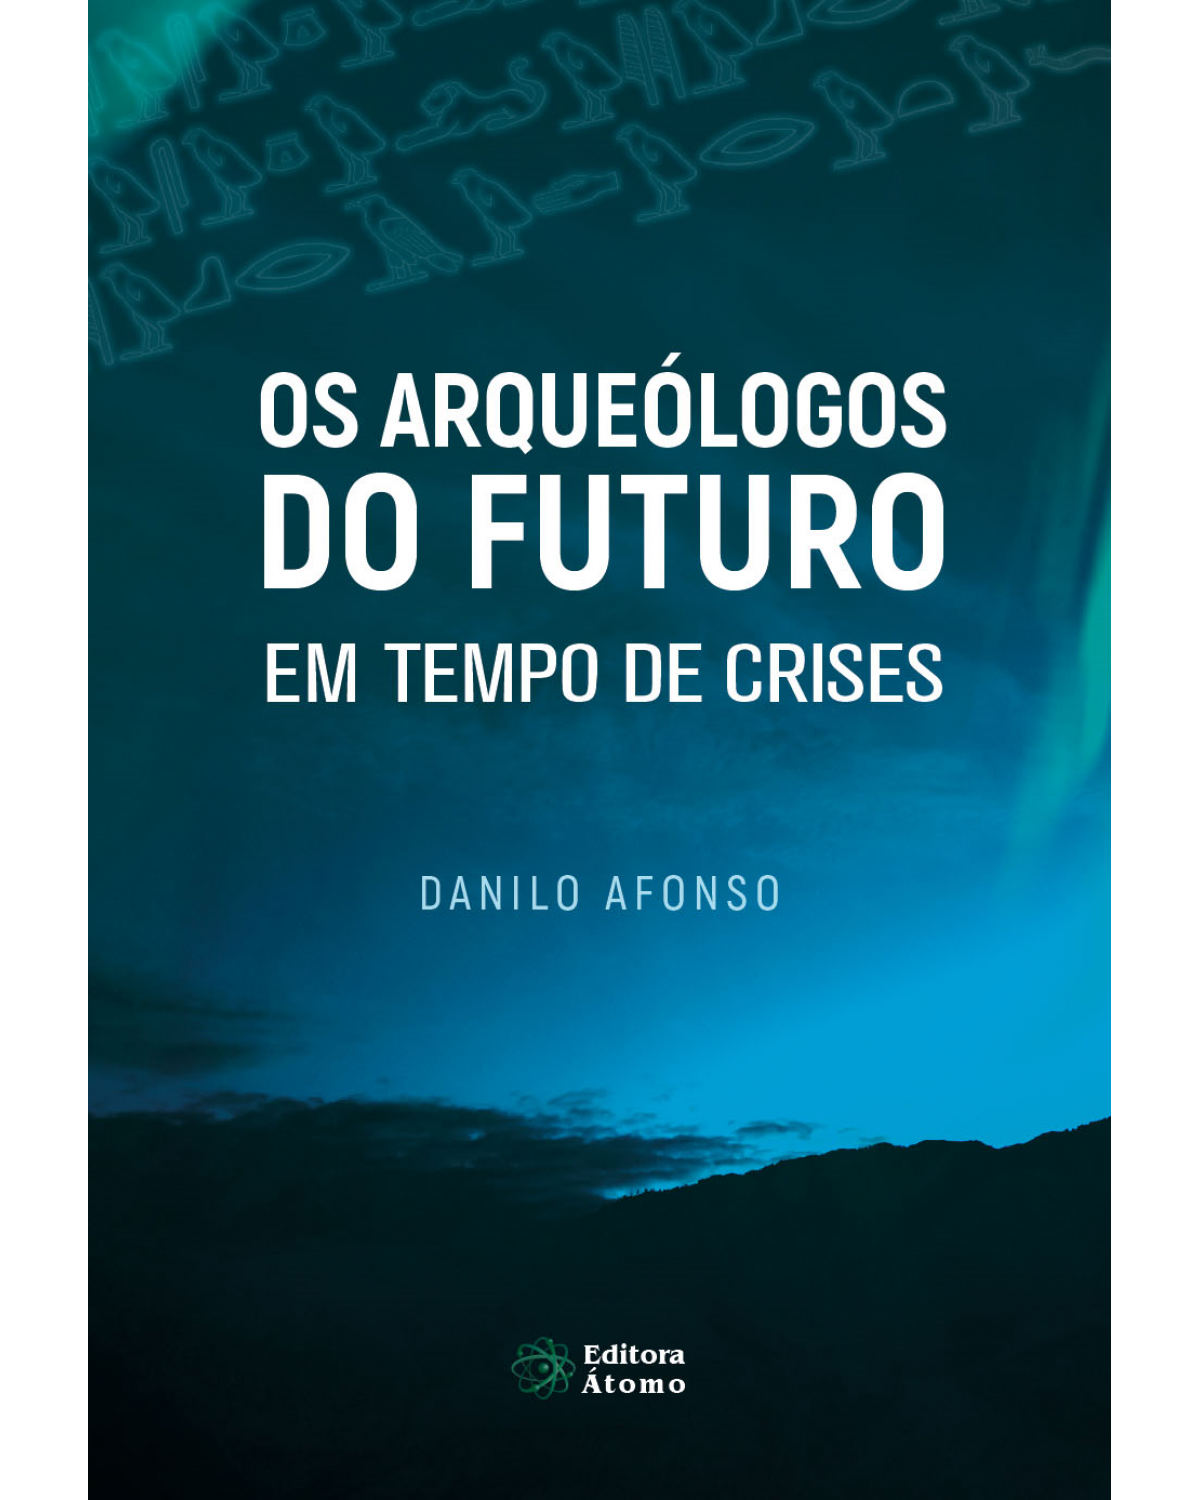 Os arqueólogos do futuro em tempo de crises: vida plena no agora como antídoto para a ansiedade e o sofrimento - 1ª Edição | 2020